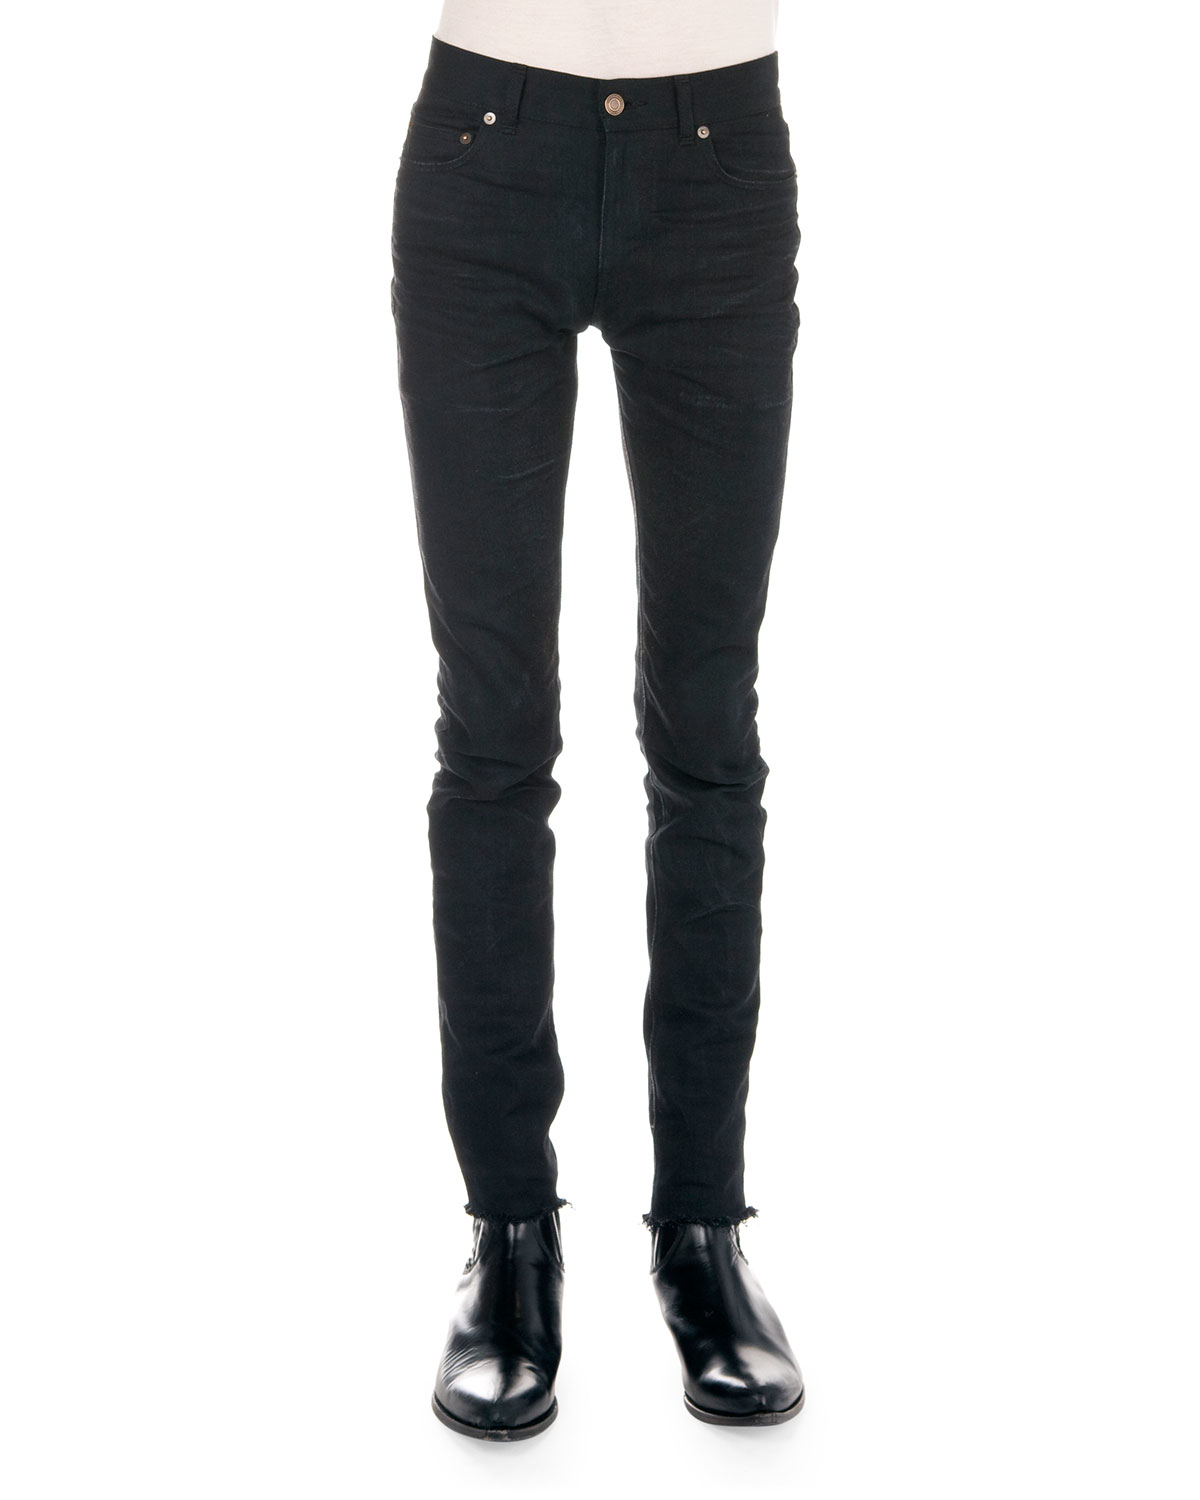 Saint Laurent Frayed Hem Skinny Jeans in Black for Men - Lyst